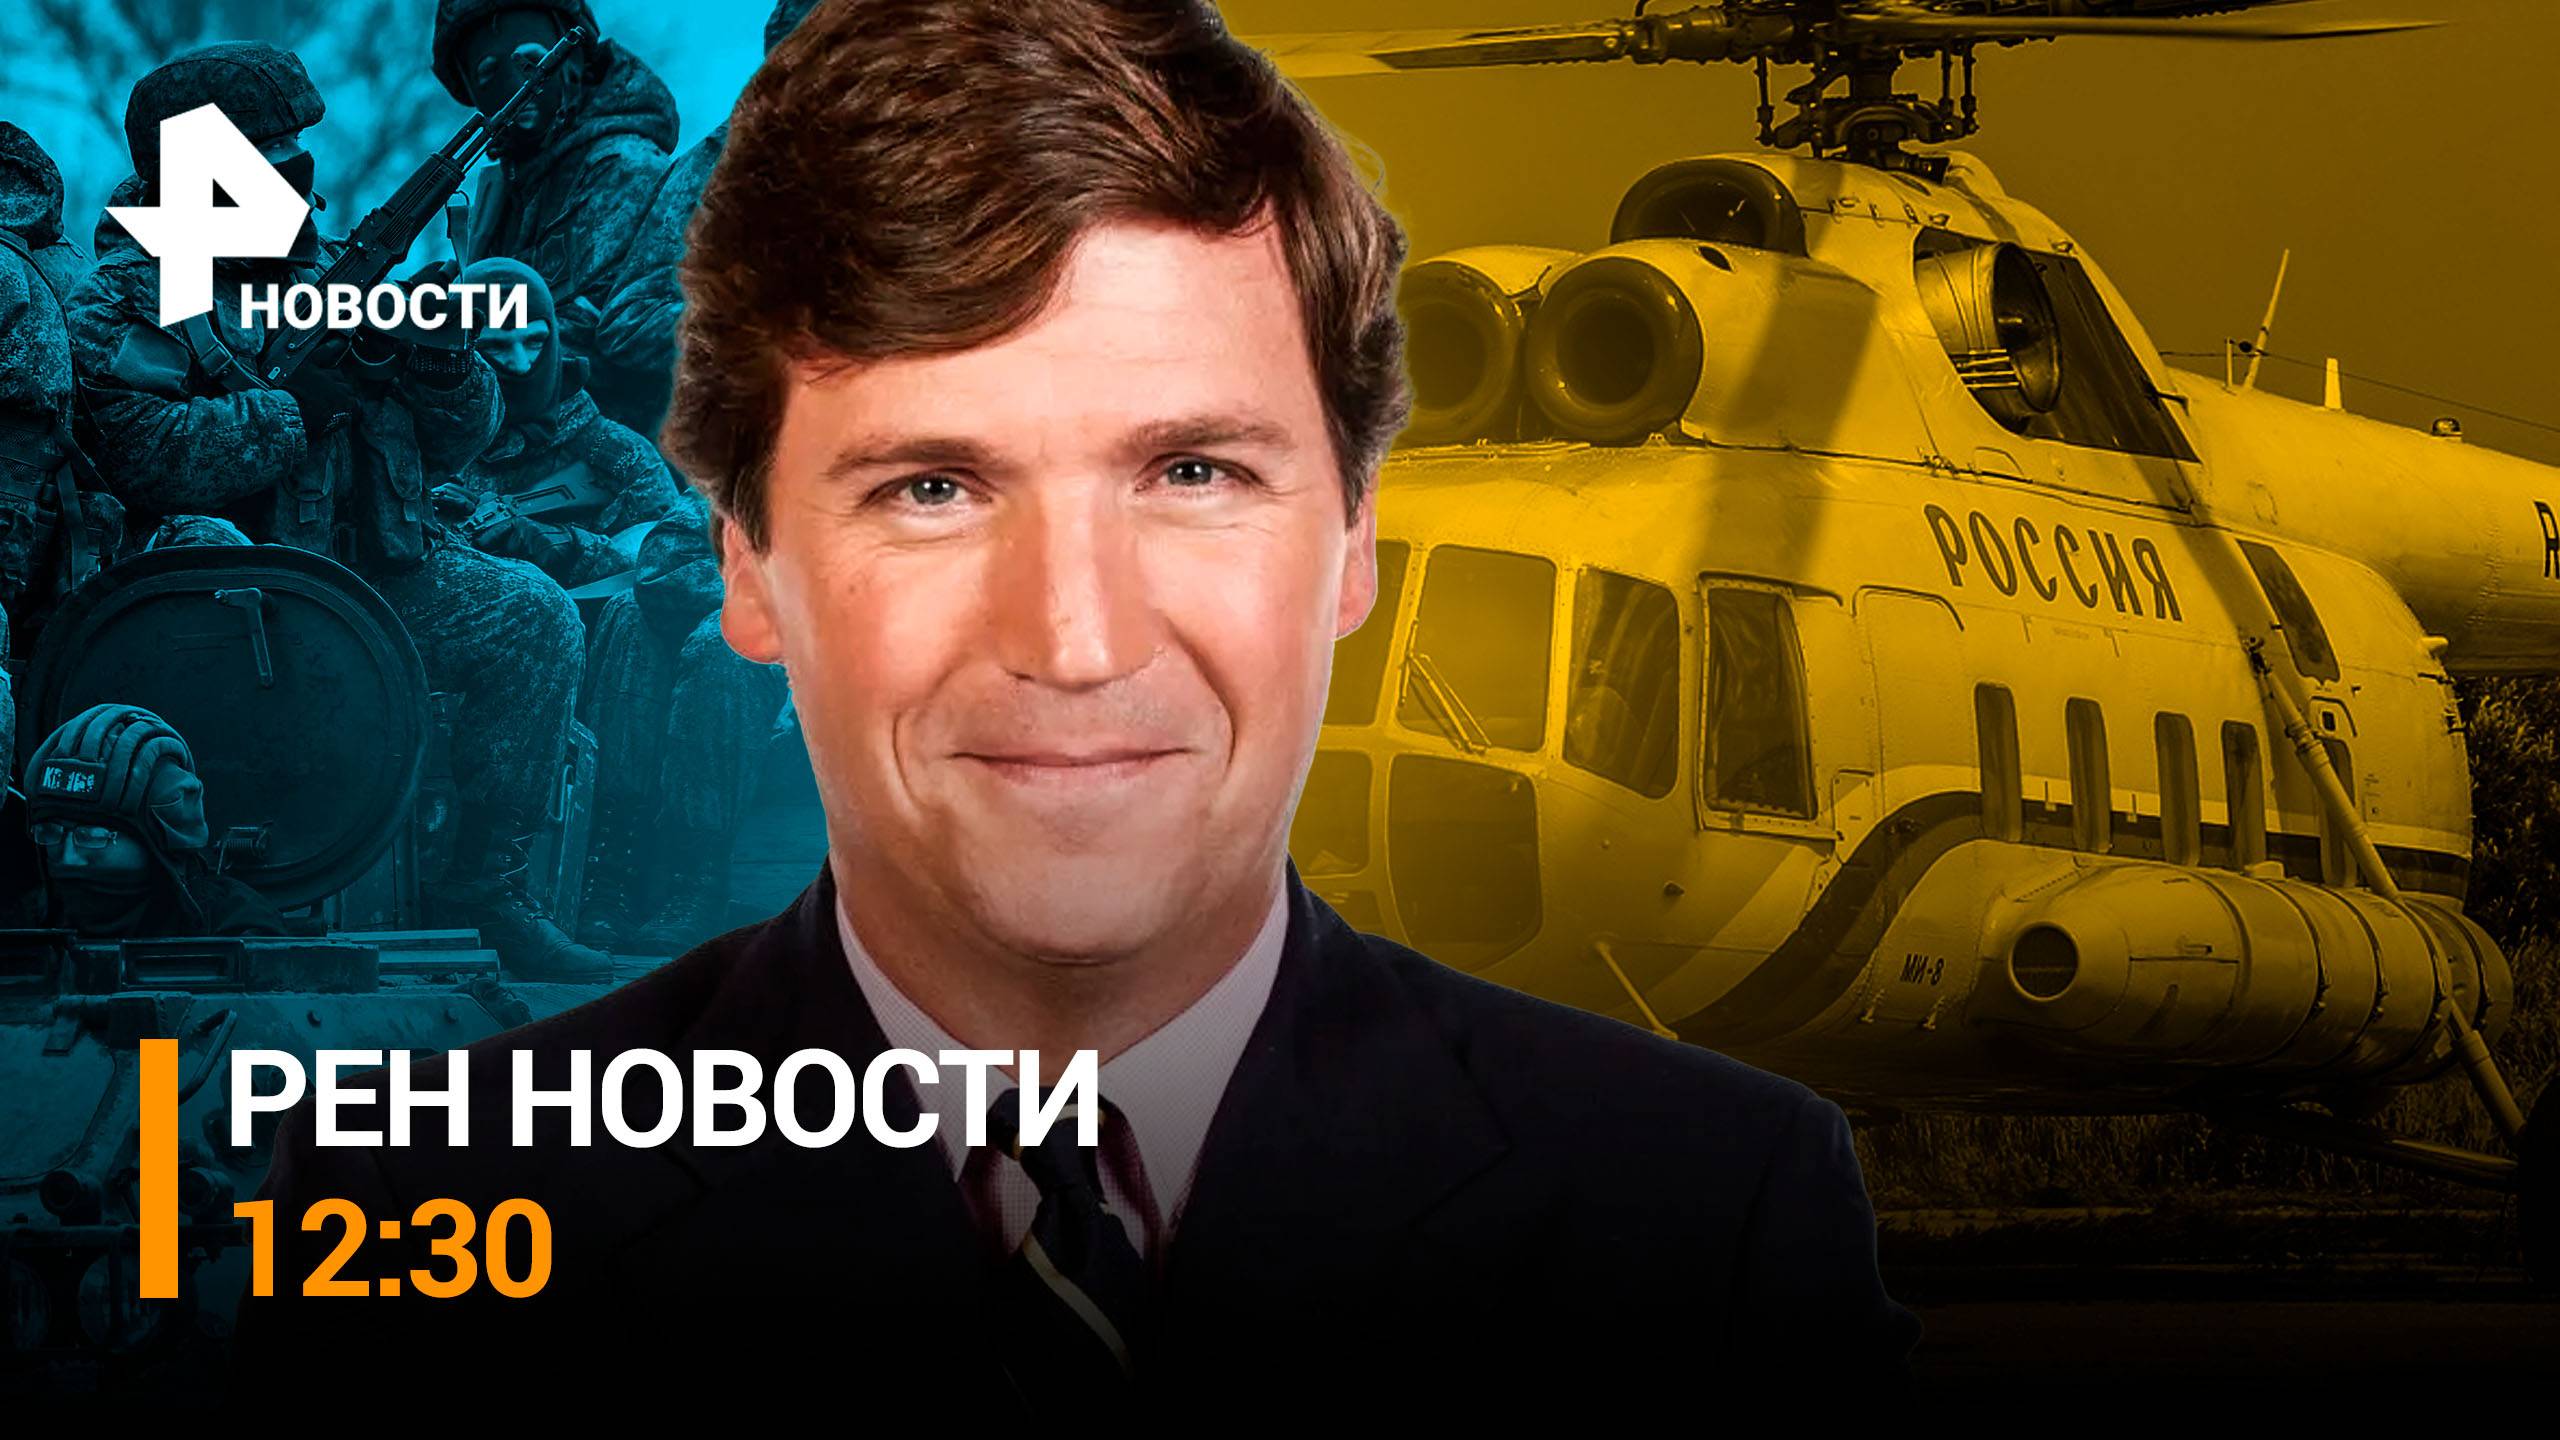 Водолазы ищут тела с упавшего Ми-8. Журналист из США рассказал о целях визита в Россию / РЕН НОВОСТИ